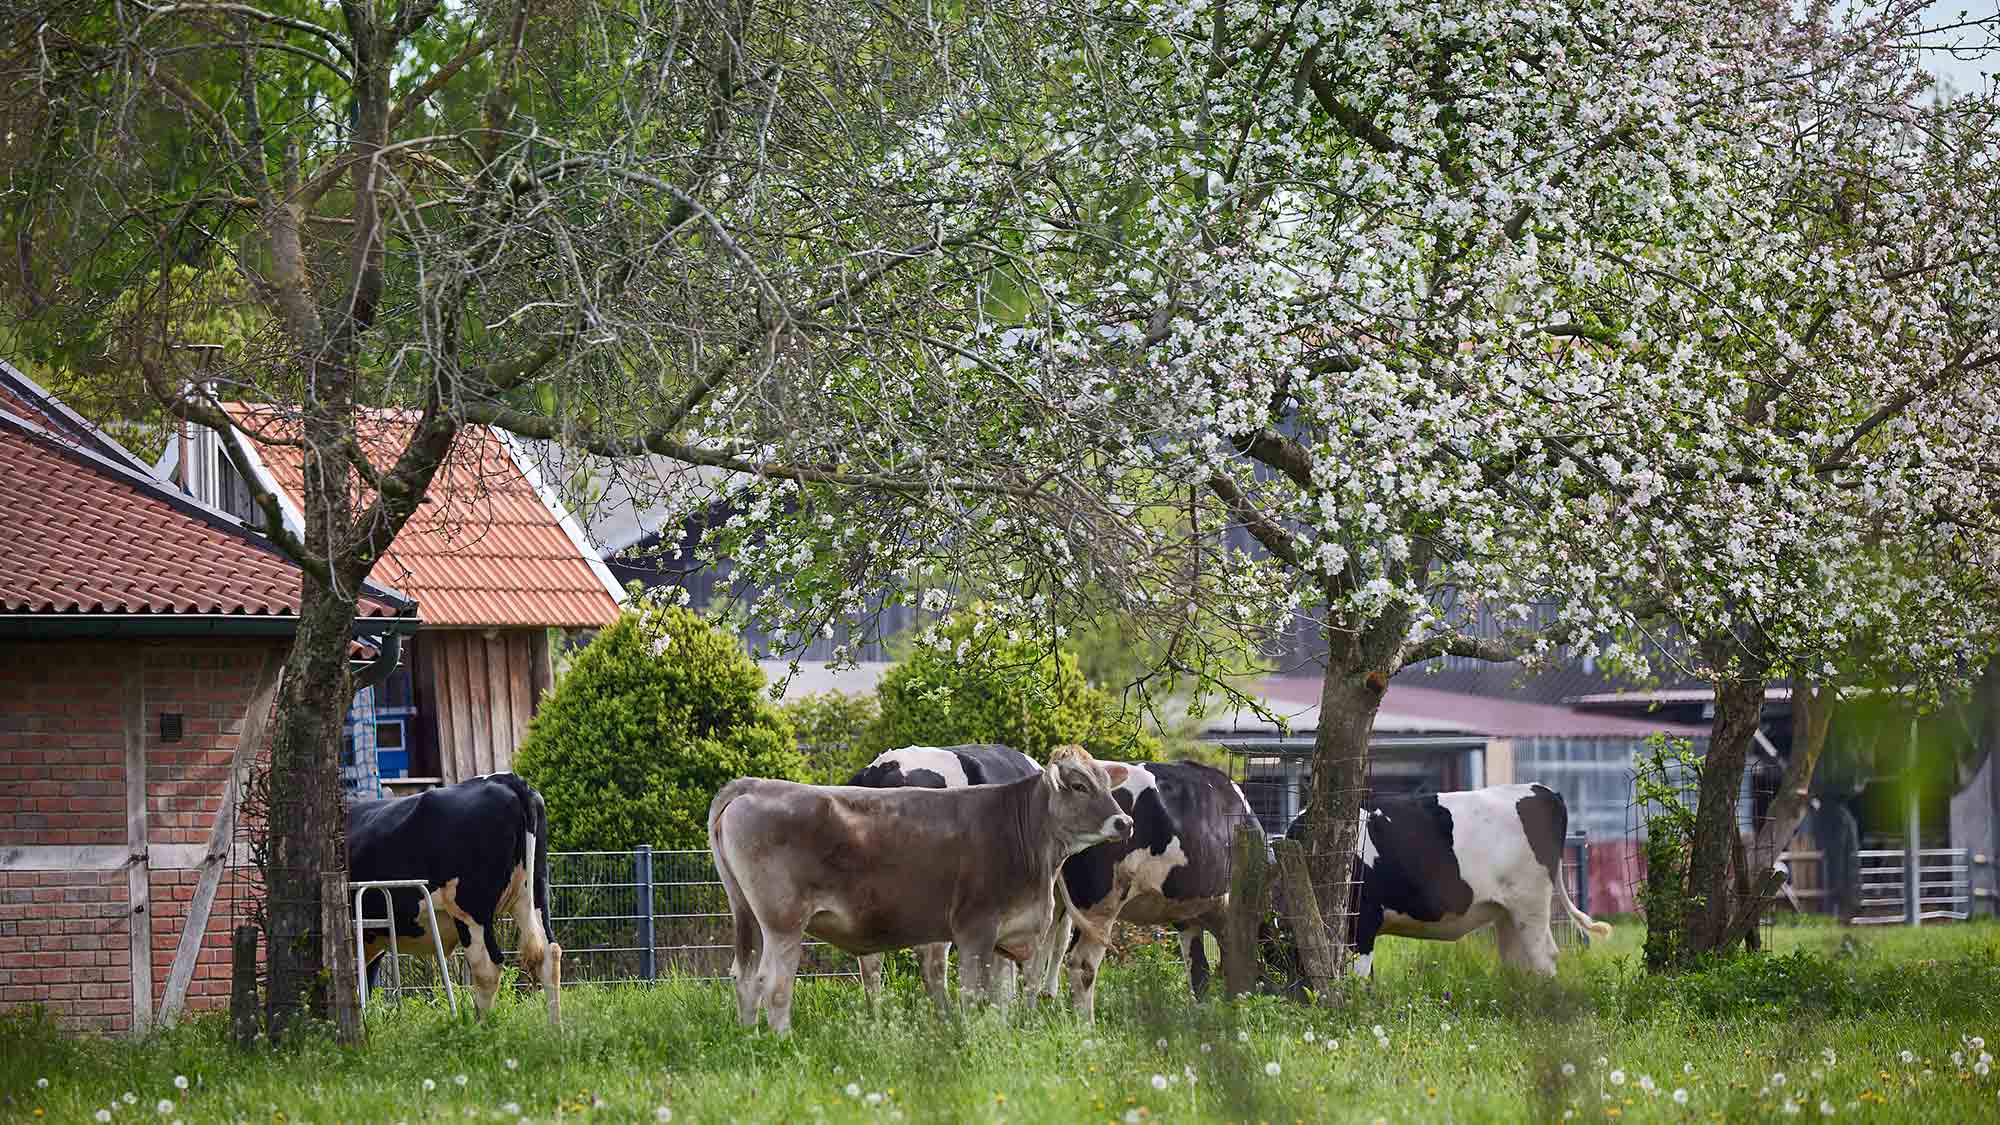 Produktion von Biofleisch: Öko Modellregion Münsterland bietet Exkursion an